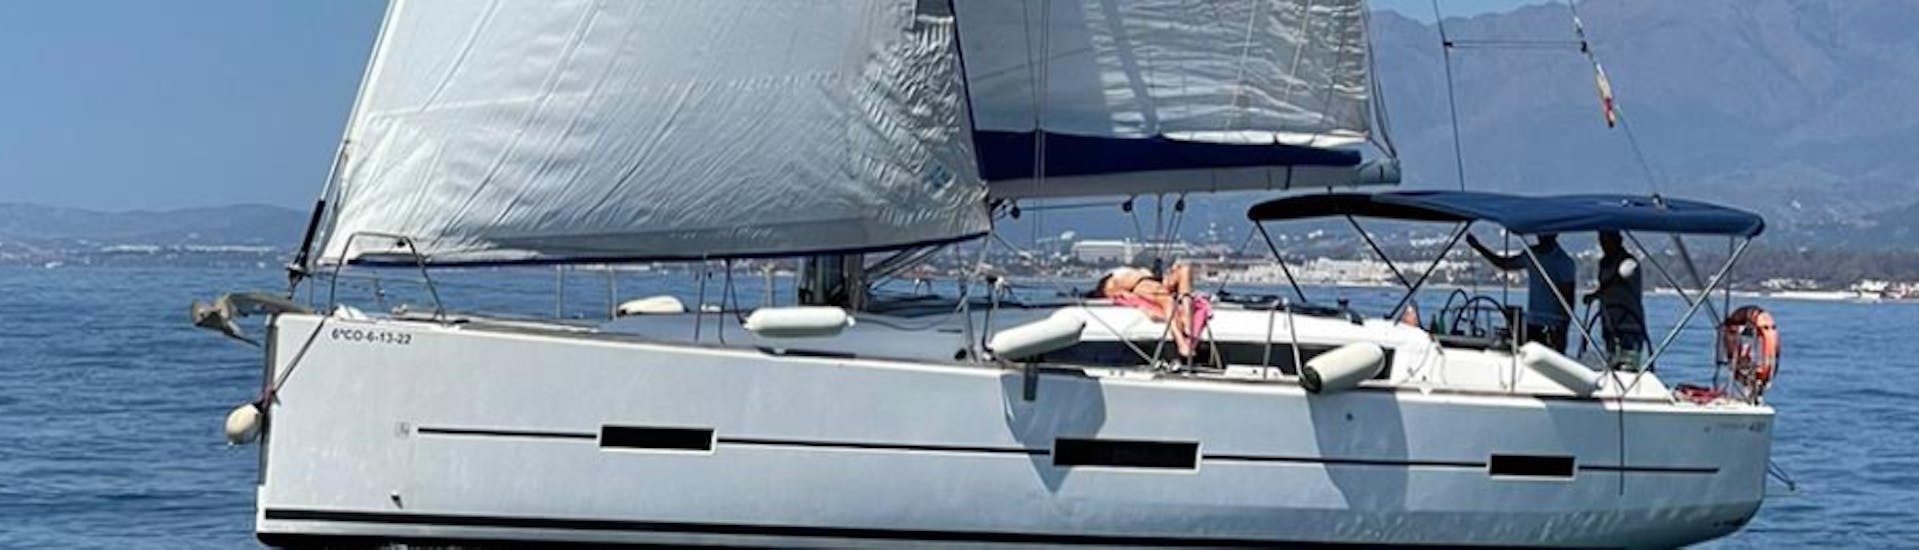 La nostra barca durante il noleggio di una barca a vela a Marbella (fino a 12 persone) con Royal Catamaran Marbella.